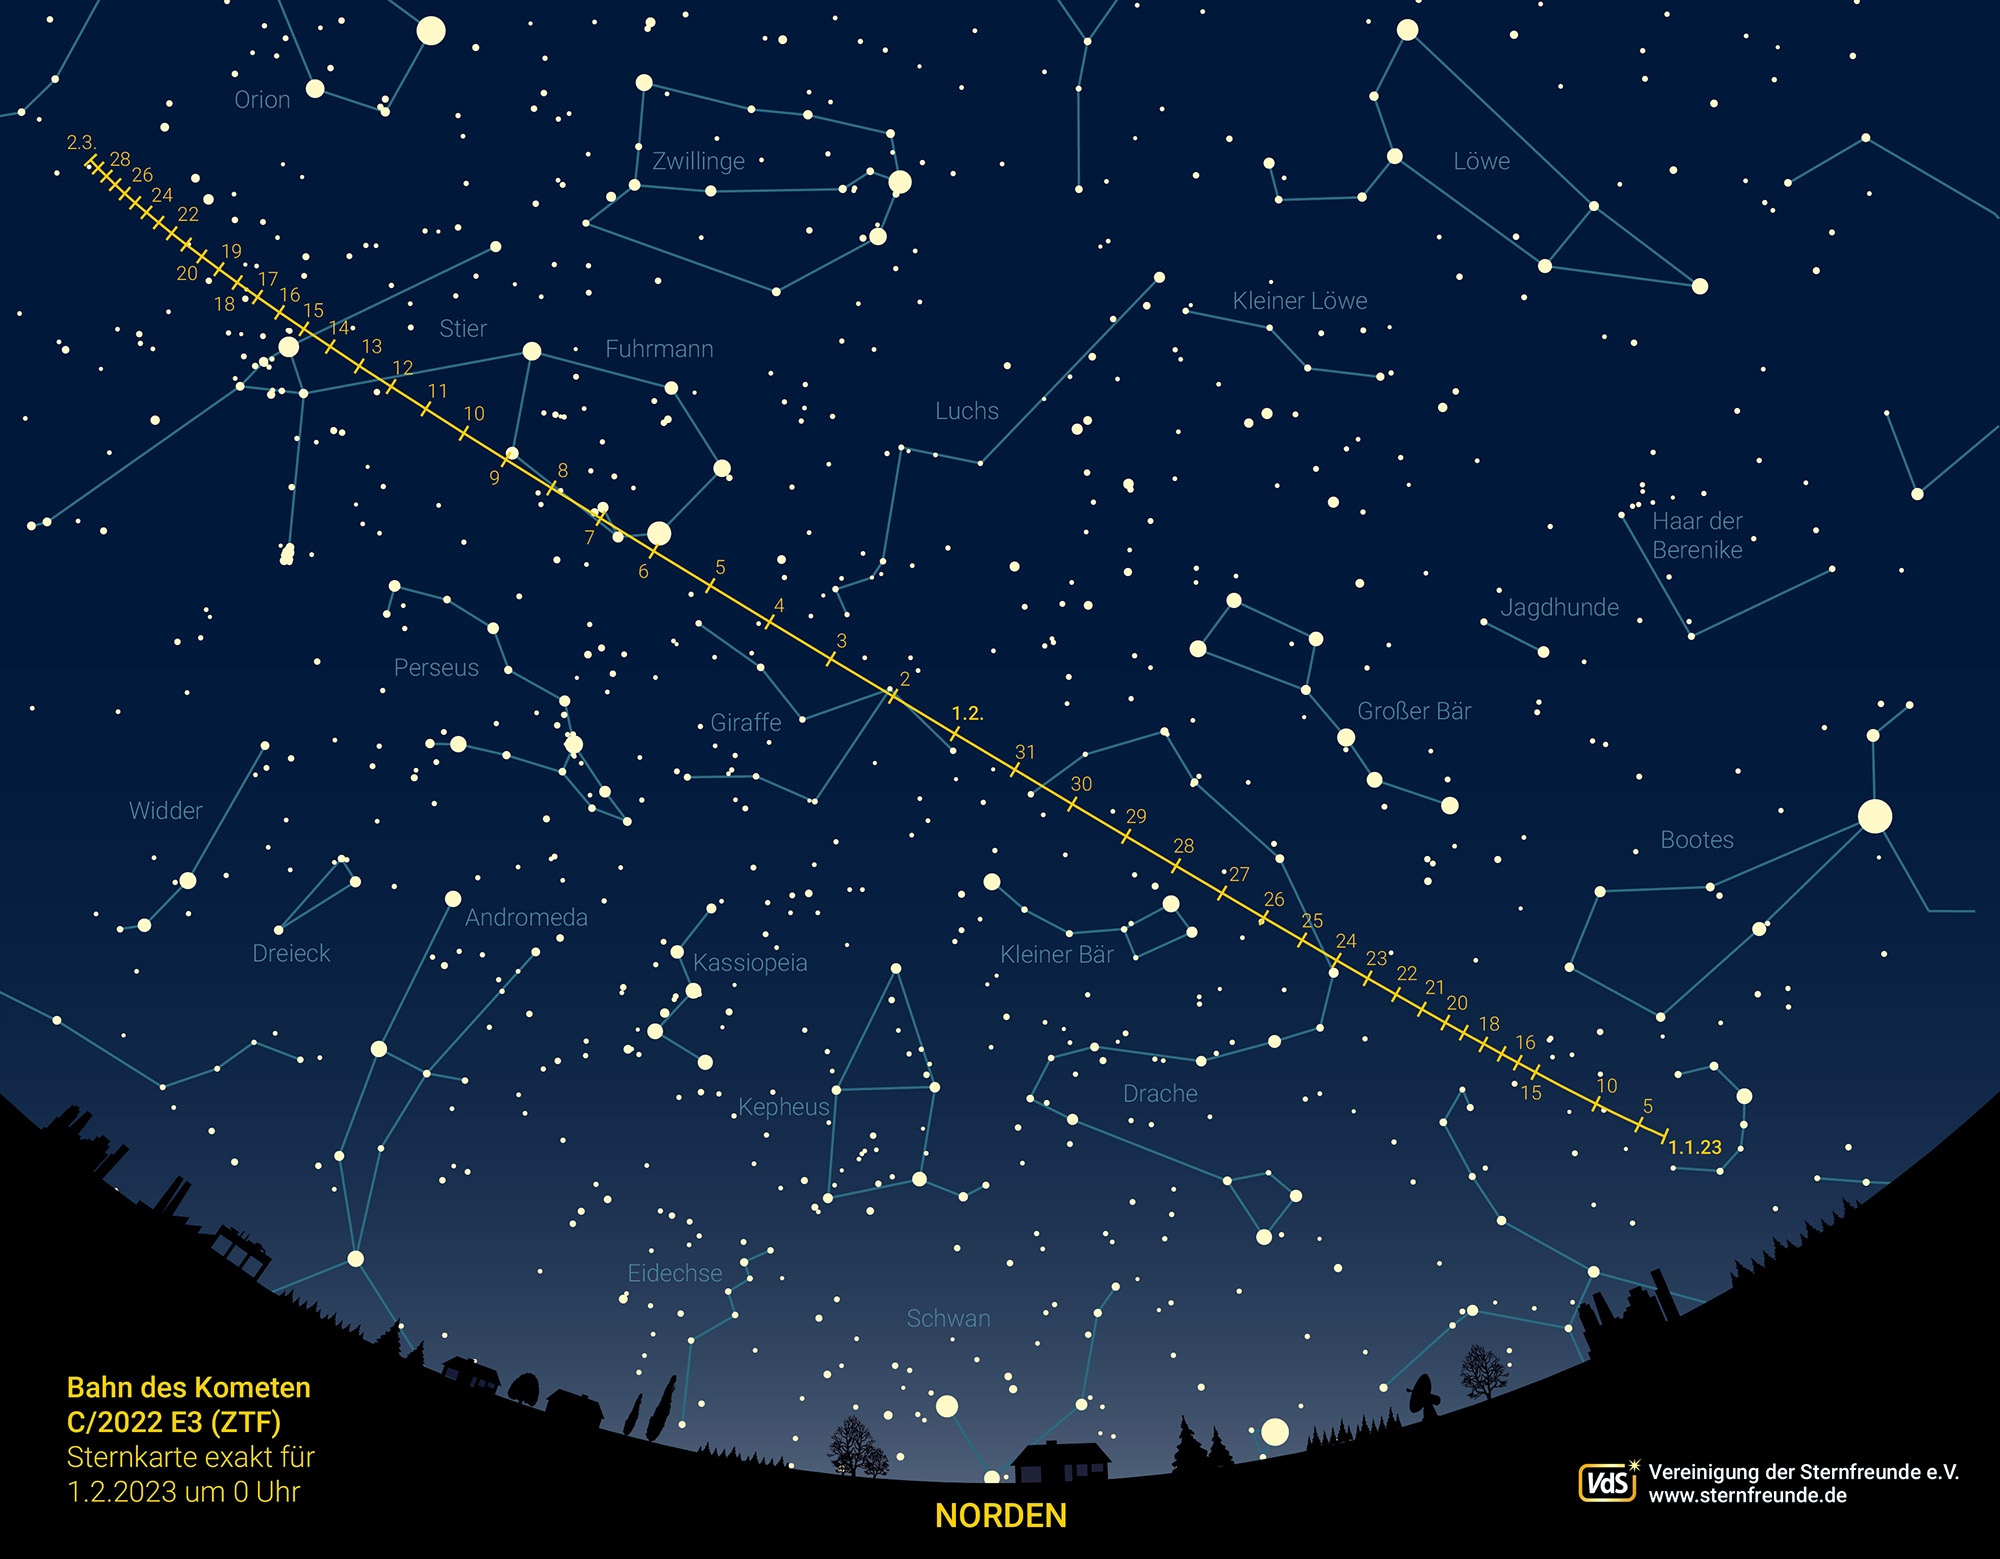 Komet bald im Fernglas zu sehen Astronomische Gesellschaft Orion